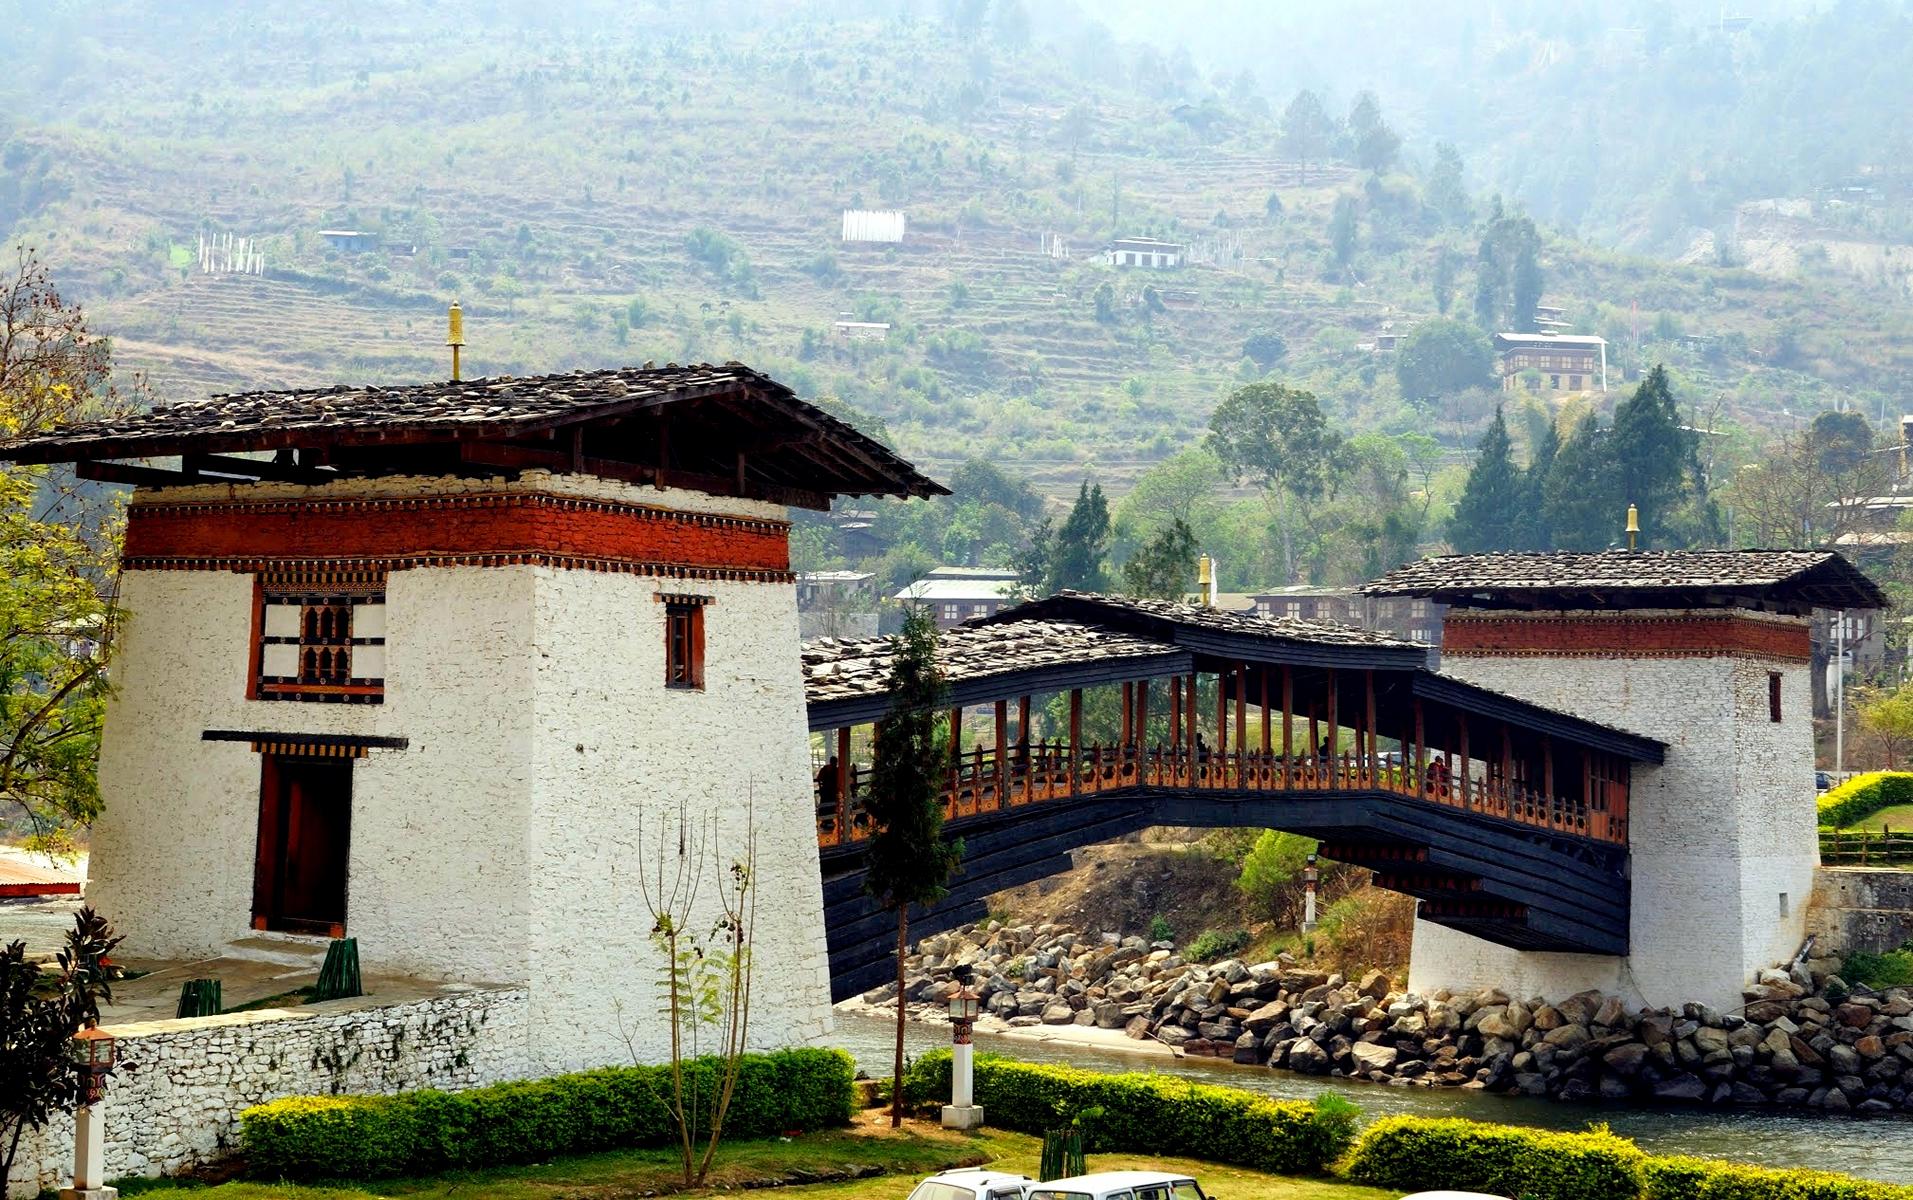 Picturesque Bhutan